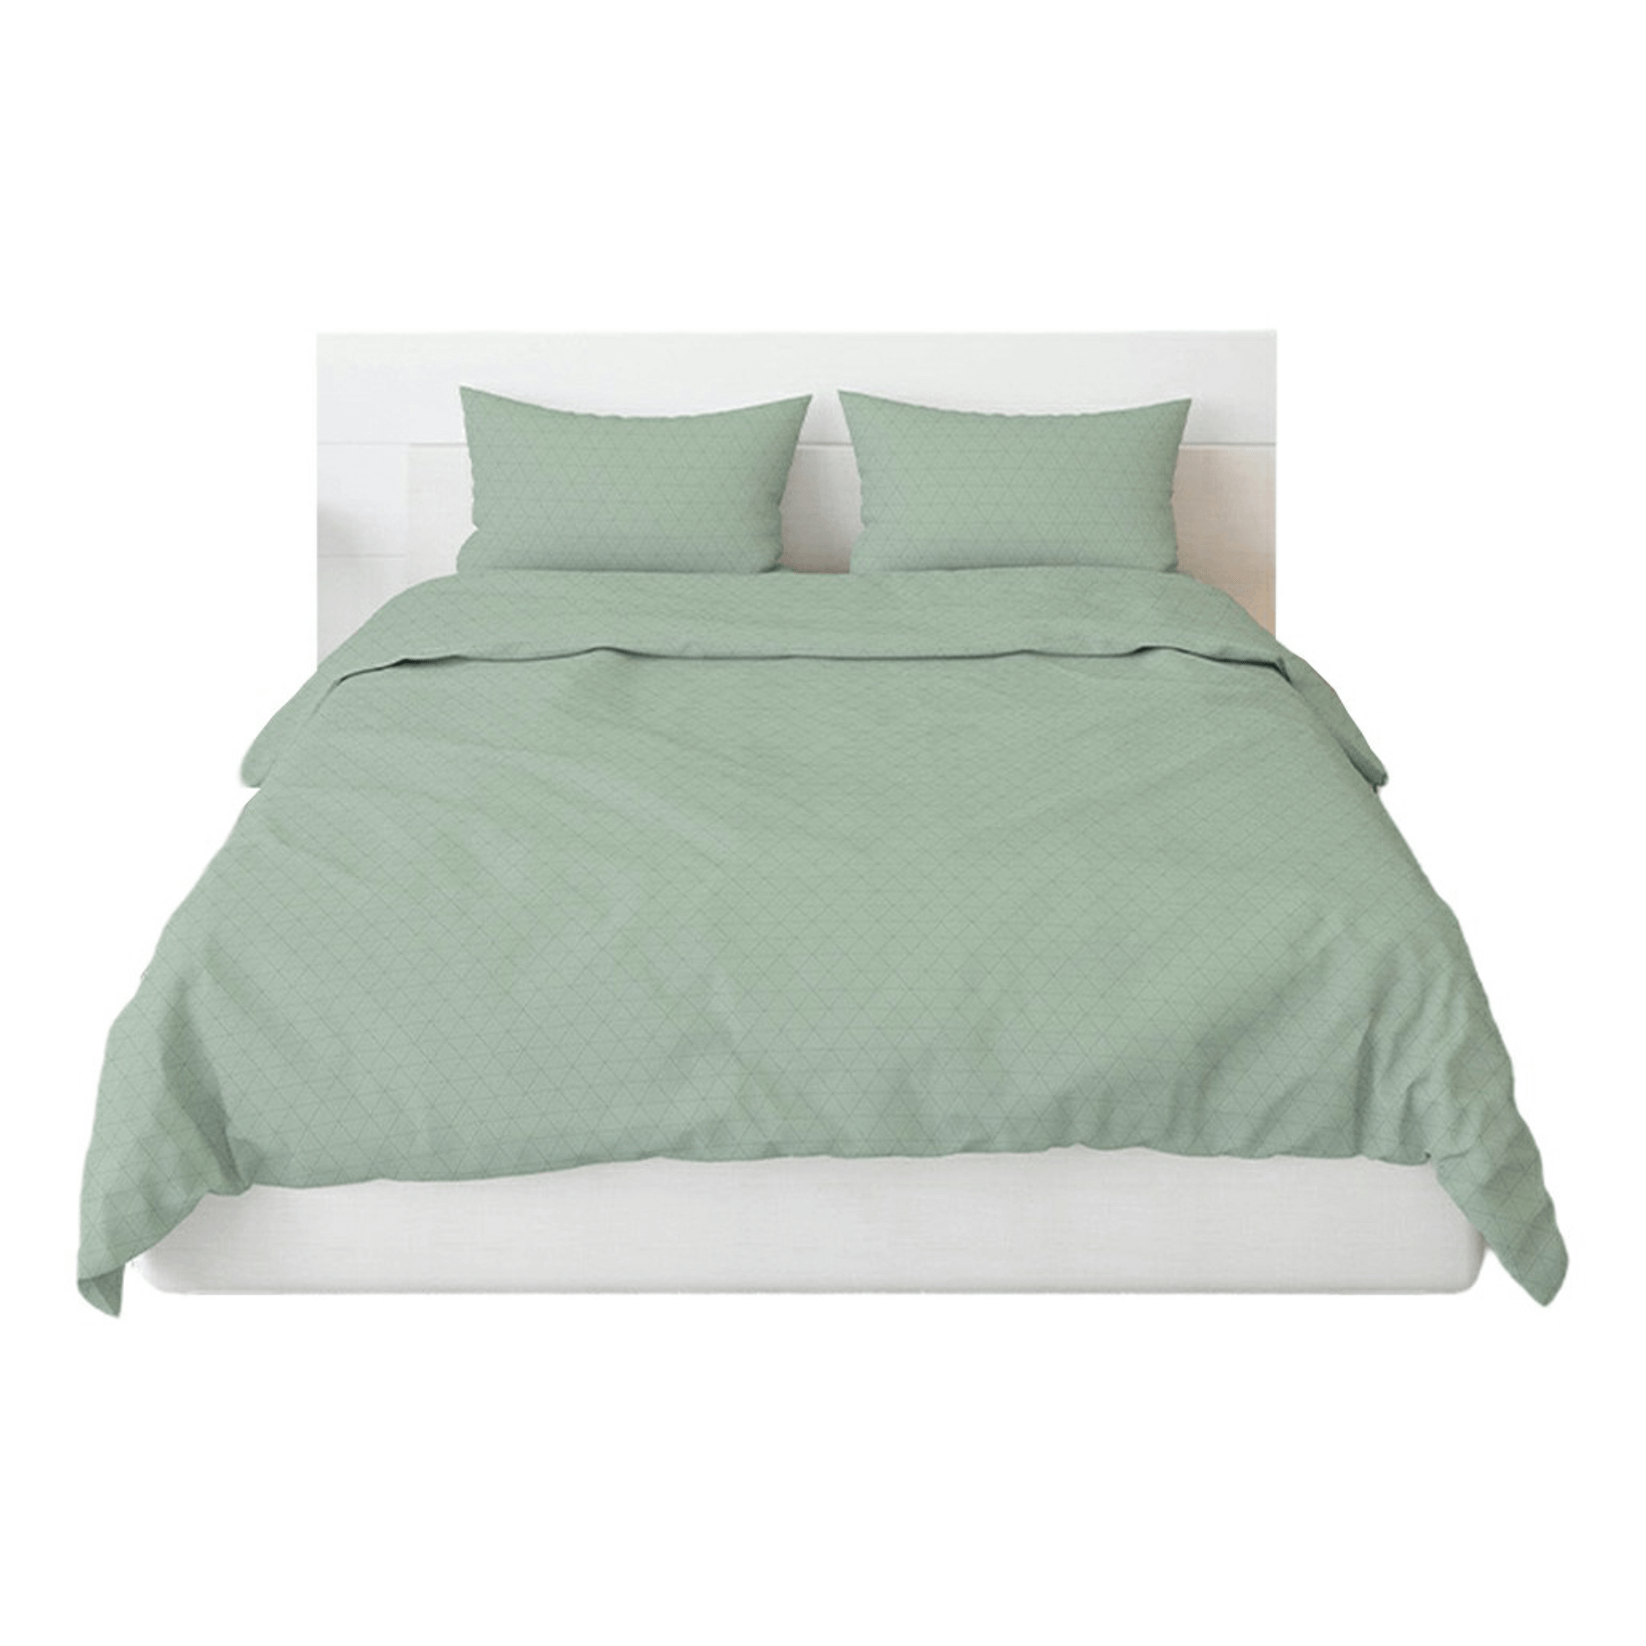 Комплект постельного белья Sole Mio Diana двуспальный поплин 50 х 70 см зеленый